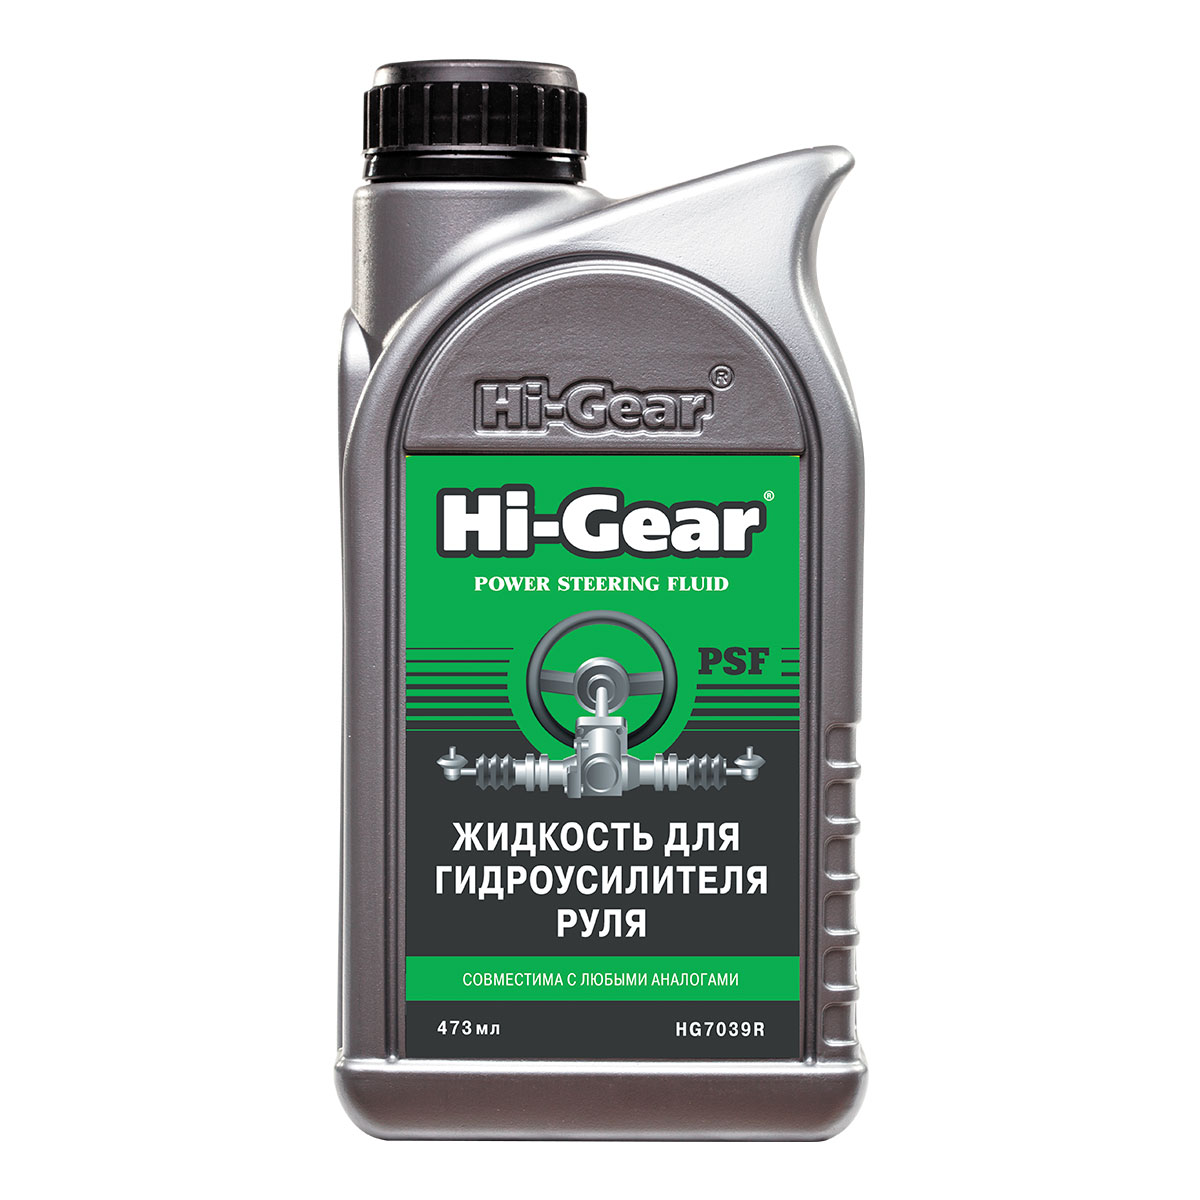 Жидкость для гидроусилителя руля Hi-Gear "PSF"